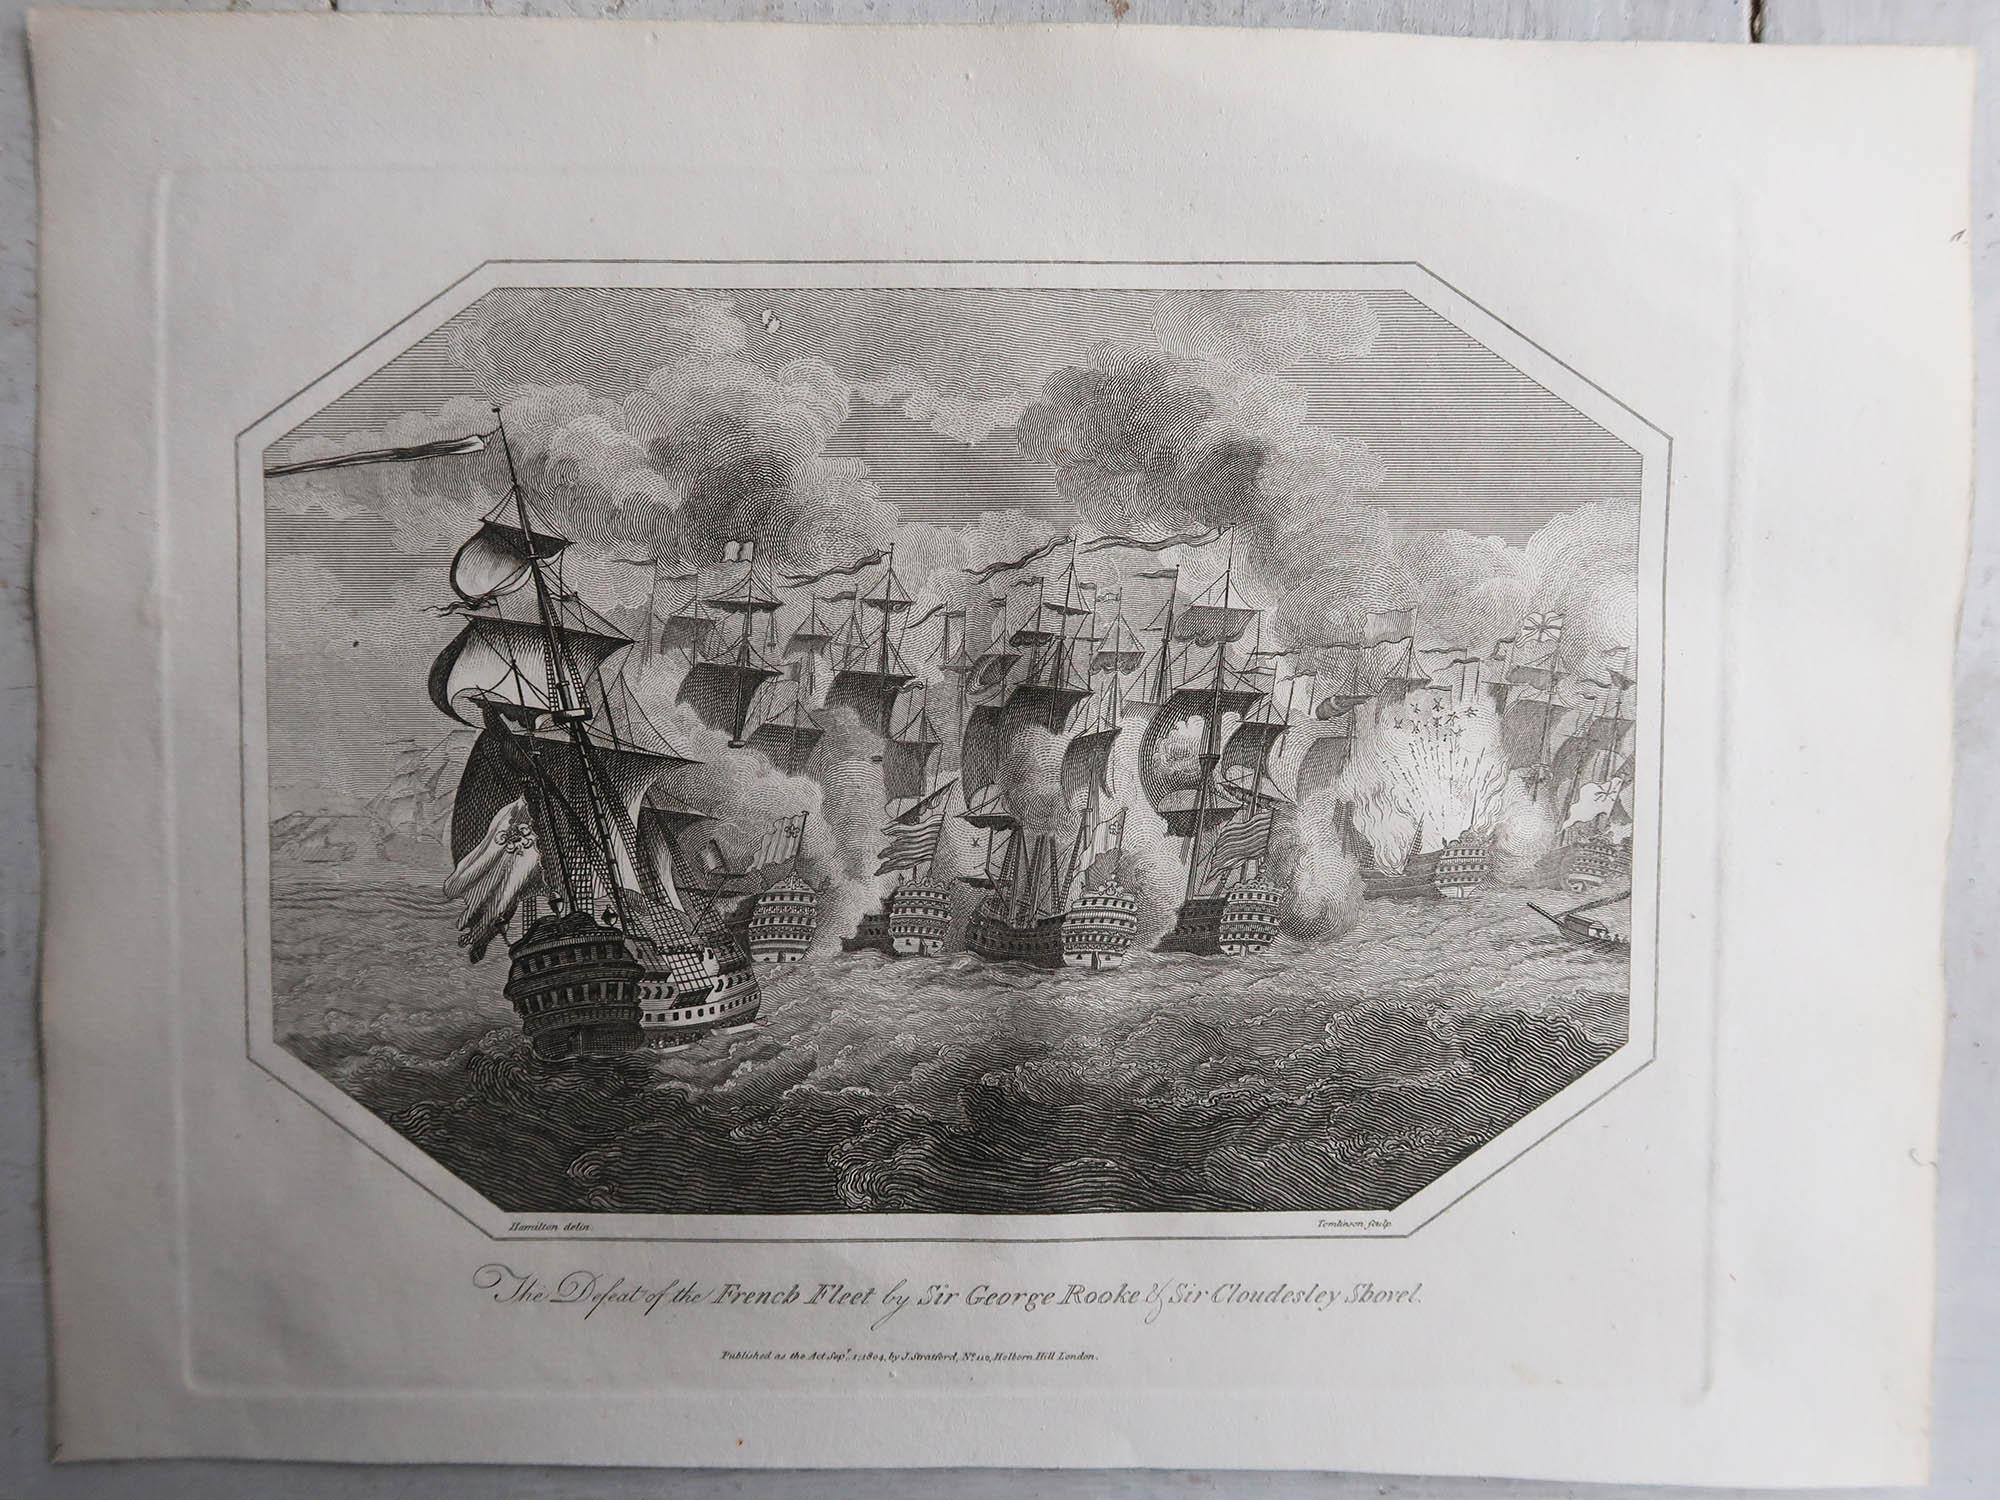 Großartige Seeschlachtreihe

Kupferstiche. 

Herausgegeben von J. Stratford, London.

Datiert 1803

Ungerahmt.

Kostenloser Versand.